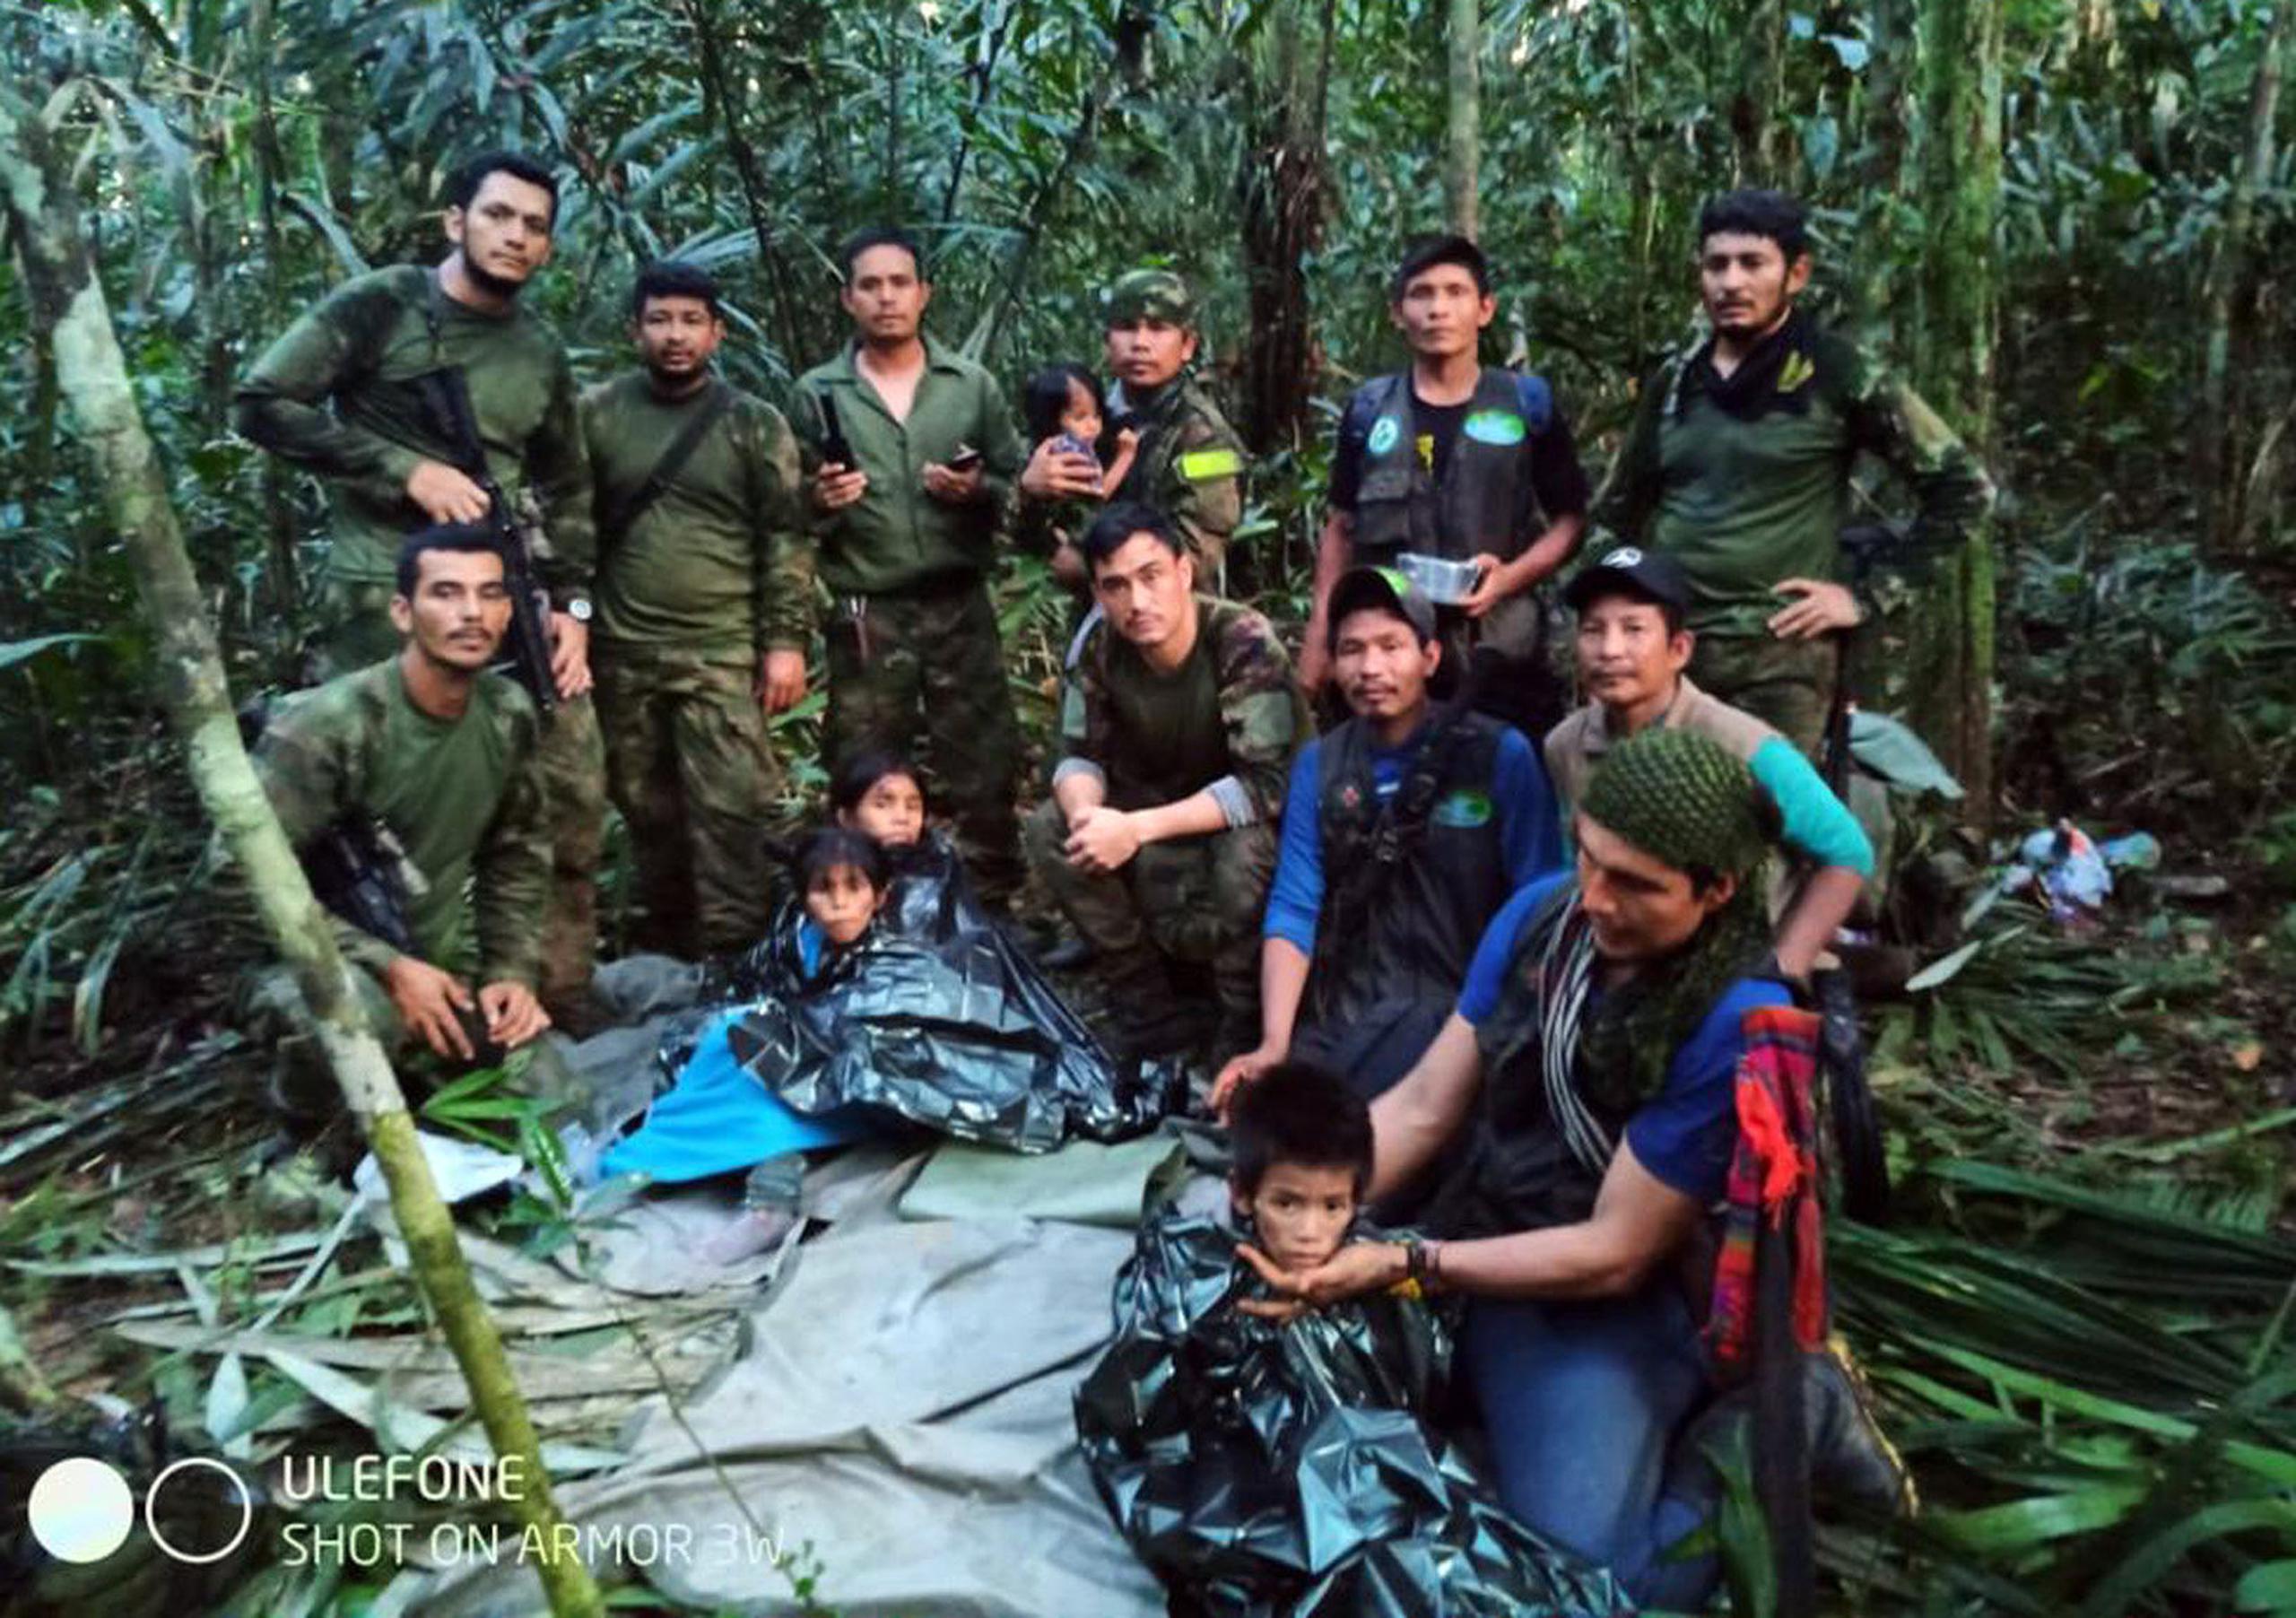 Tras 40 días en la selva, los niños fueron hallados con vida el 10 de junio.